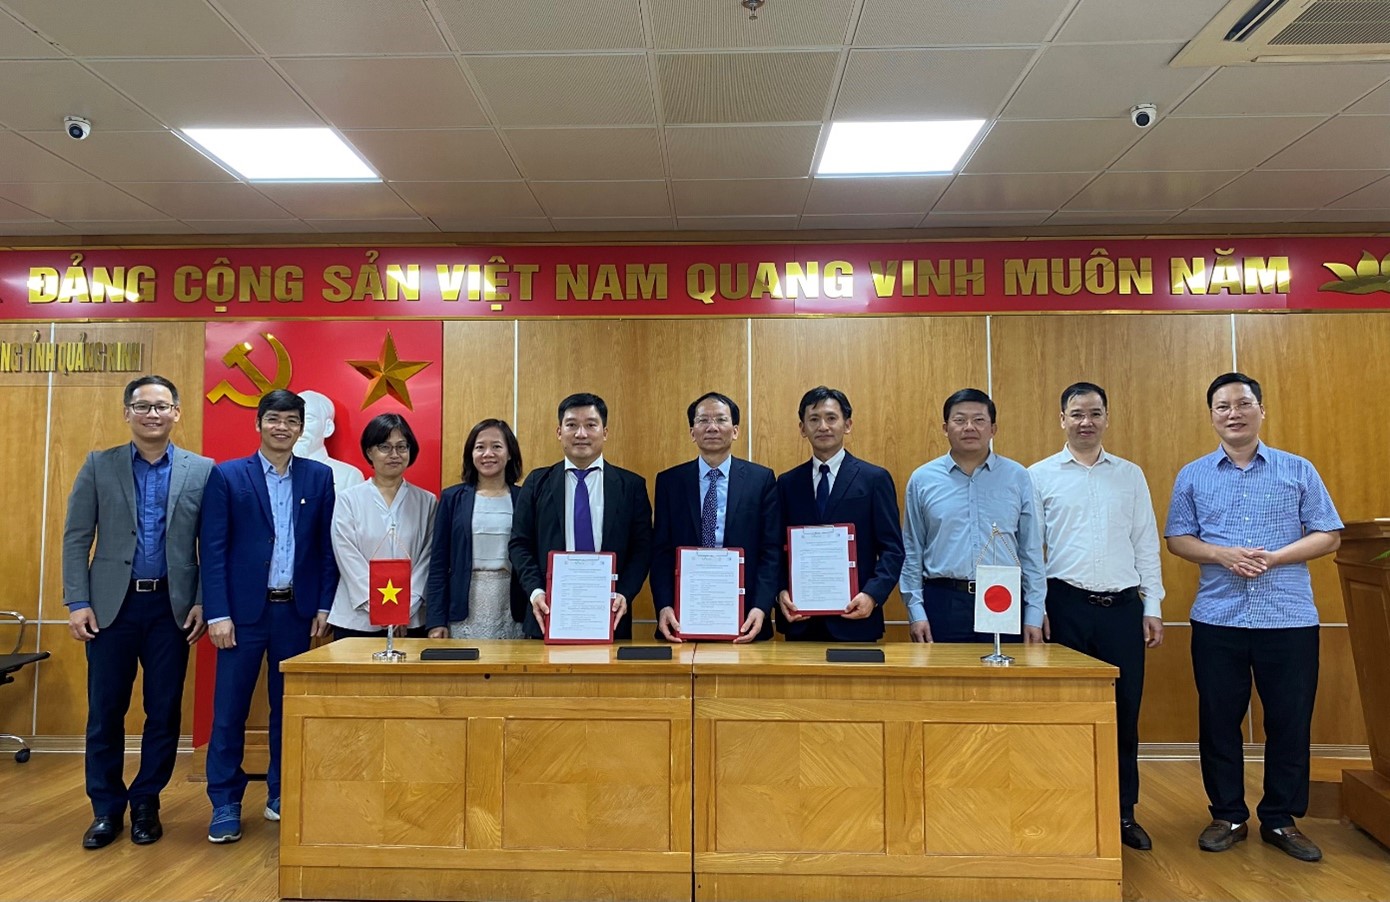 Lễ ký kết Thỏa thuận hợp tác kỹ thuật giữa Trường Đại học Xây dựng Hà Nội, Sở Xây dựng tỉnh Quảng Ninh và Đại học Saitama Nhật Bản